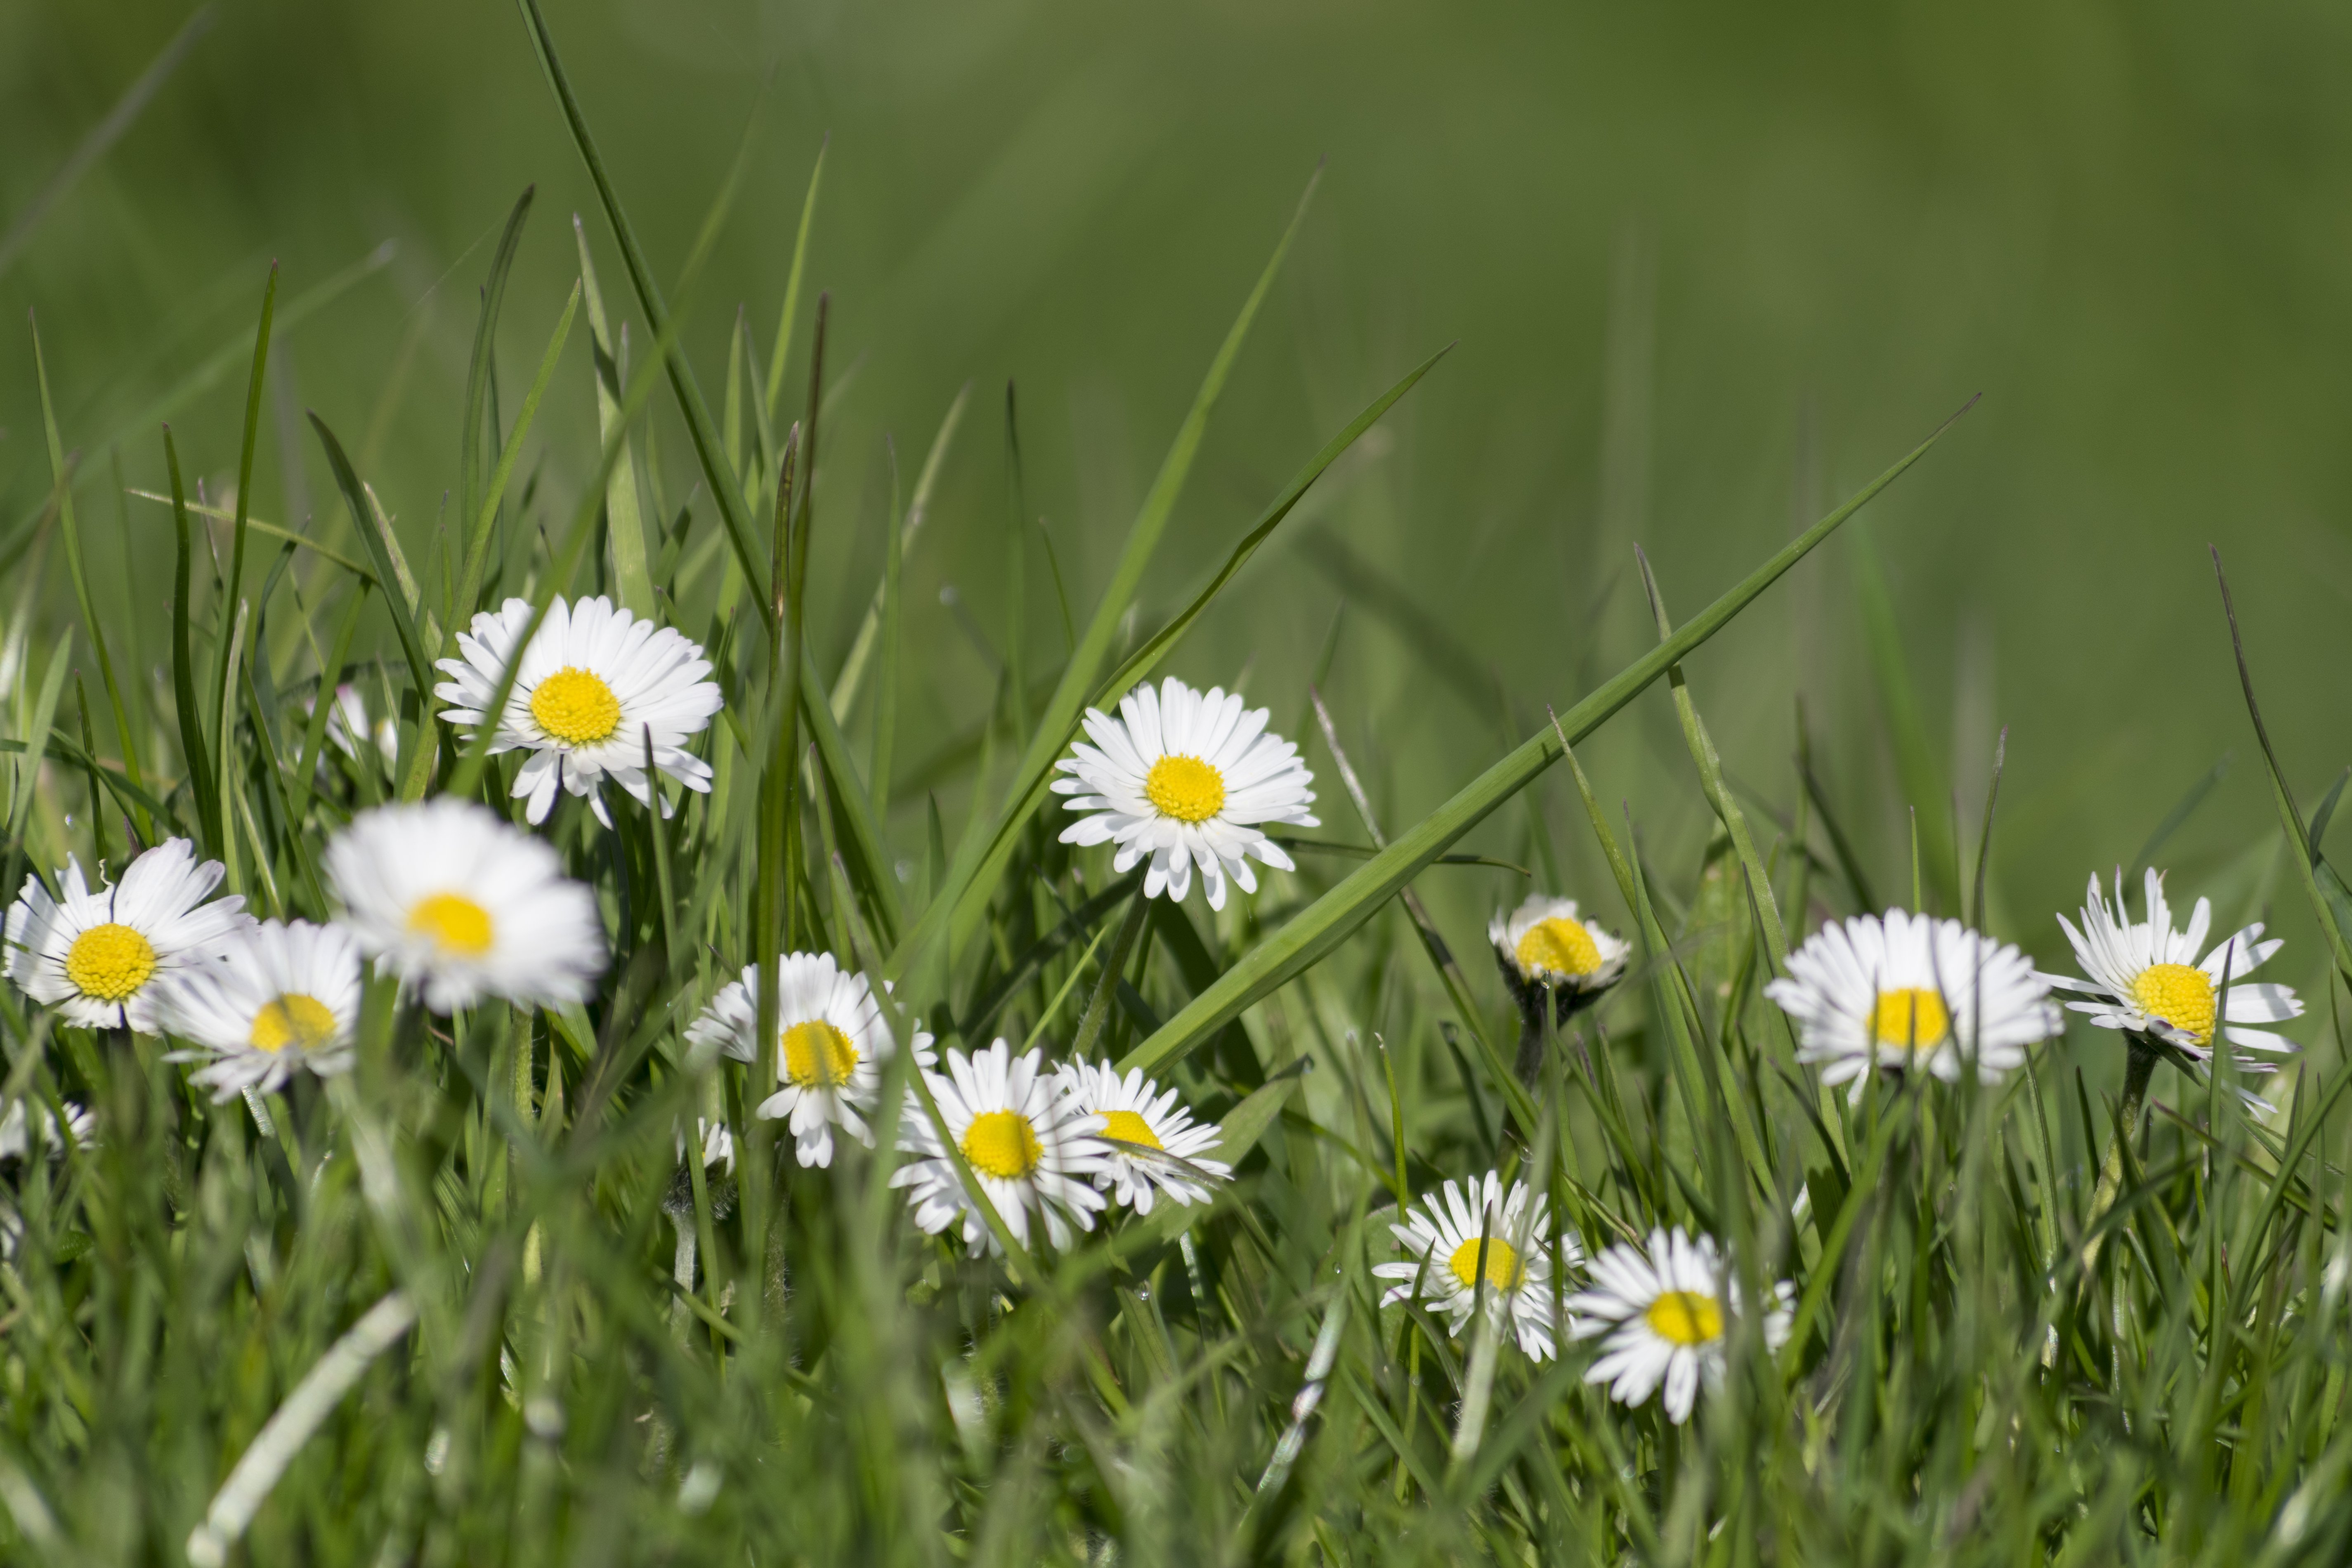 Image libre: fleur de Marguerite, pelouse, champ, herbe, jardin, été,  nature, herbe